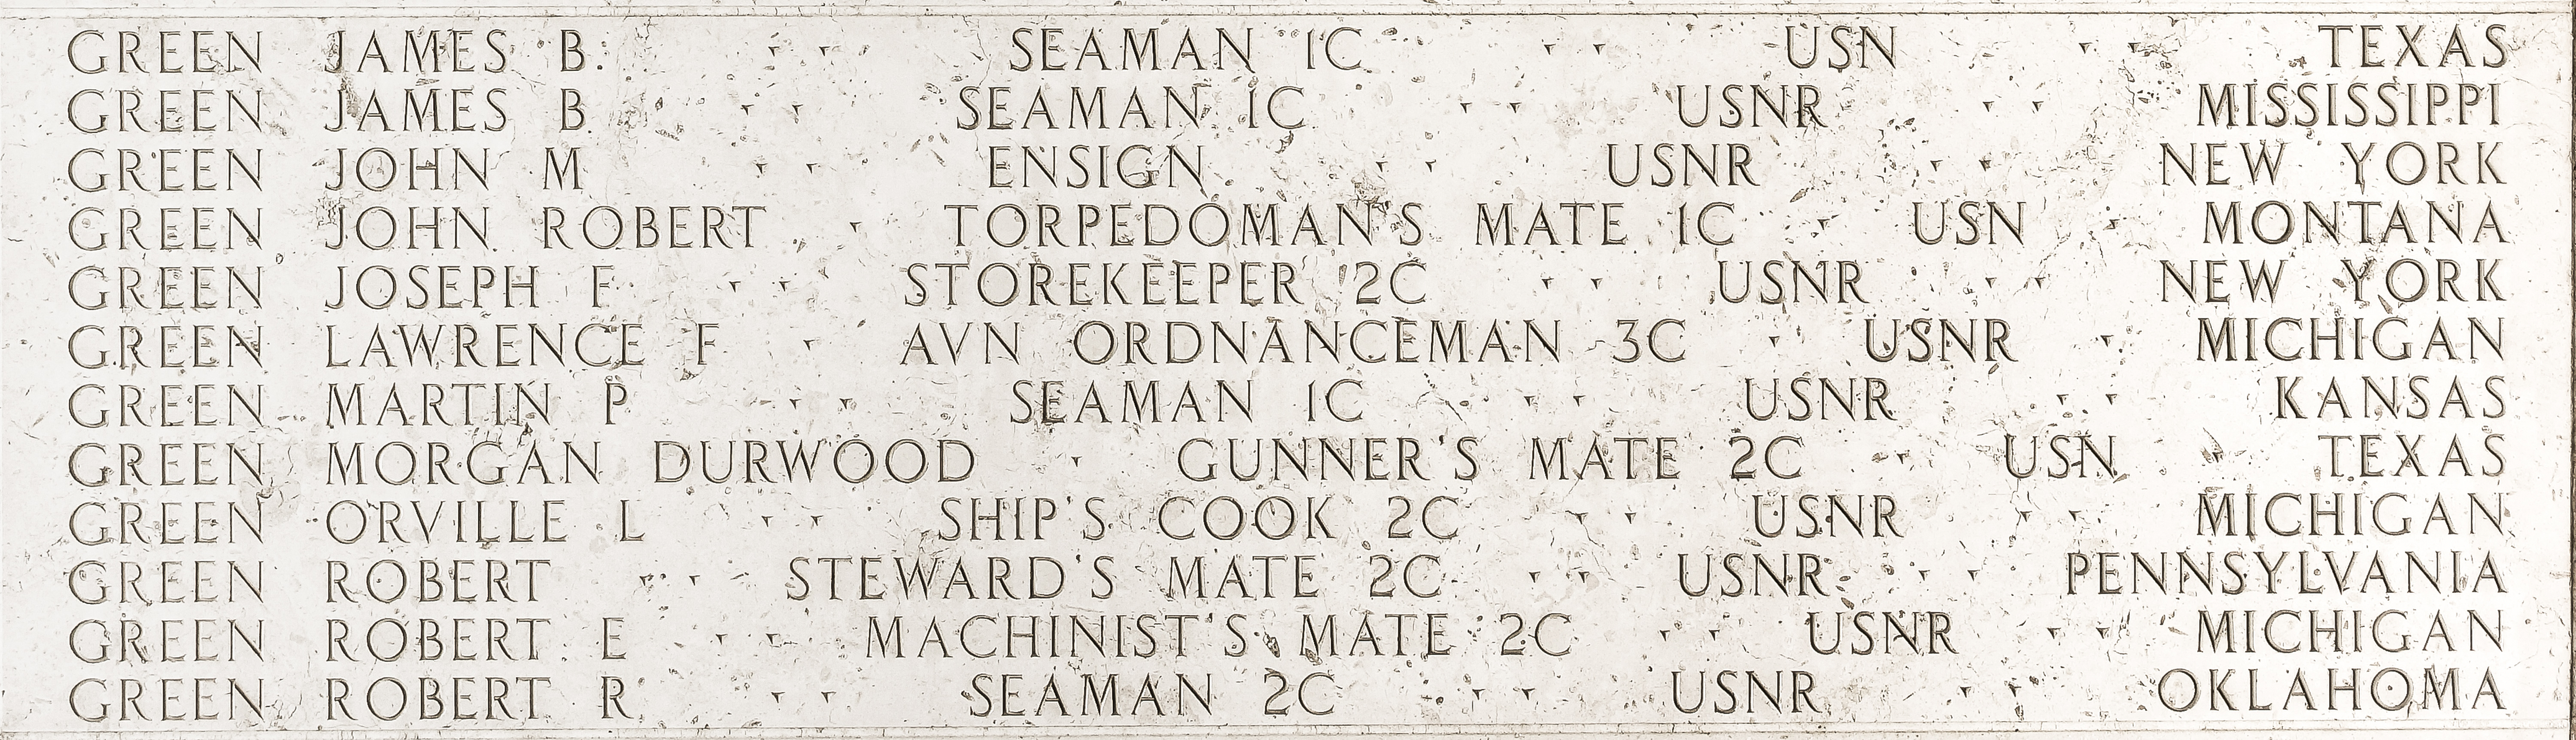 James B. Green, Seaman First Class